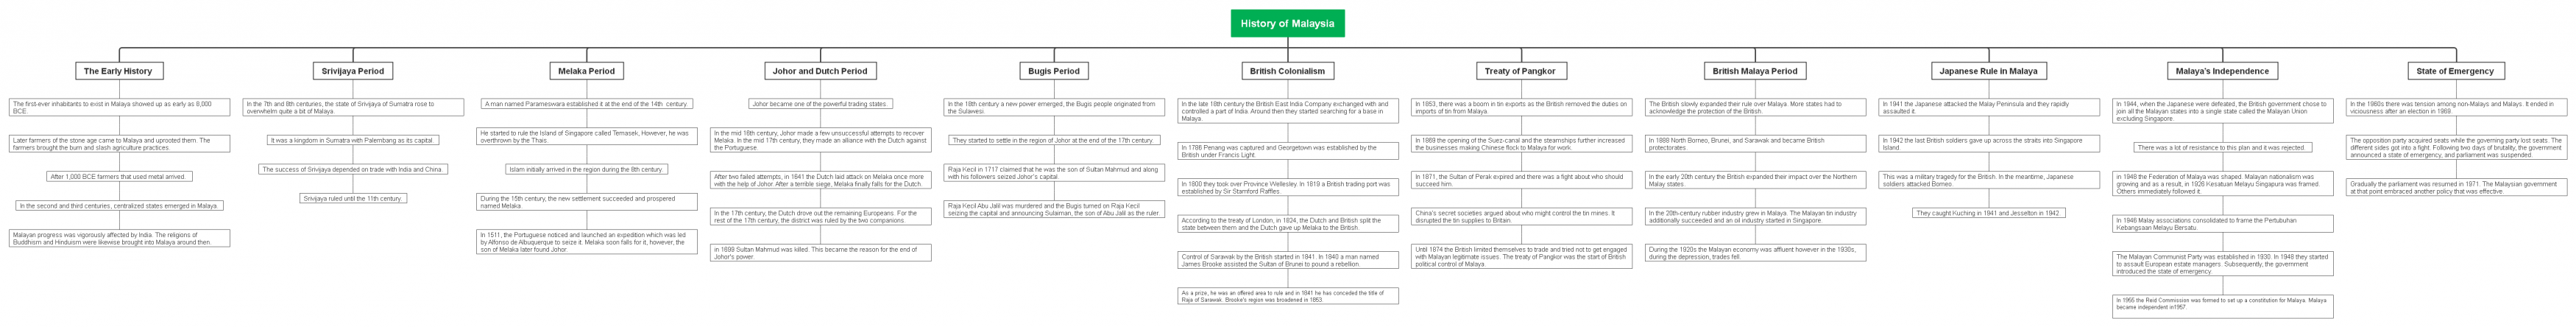 history of Malaysia